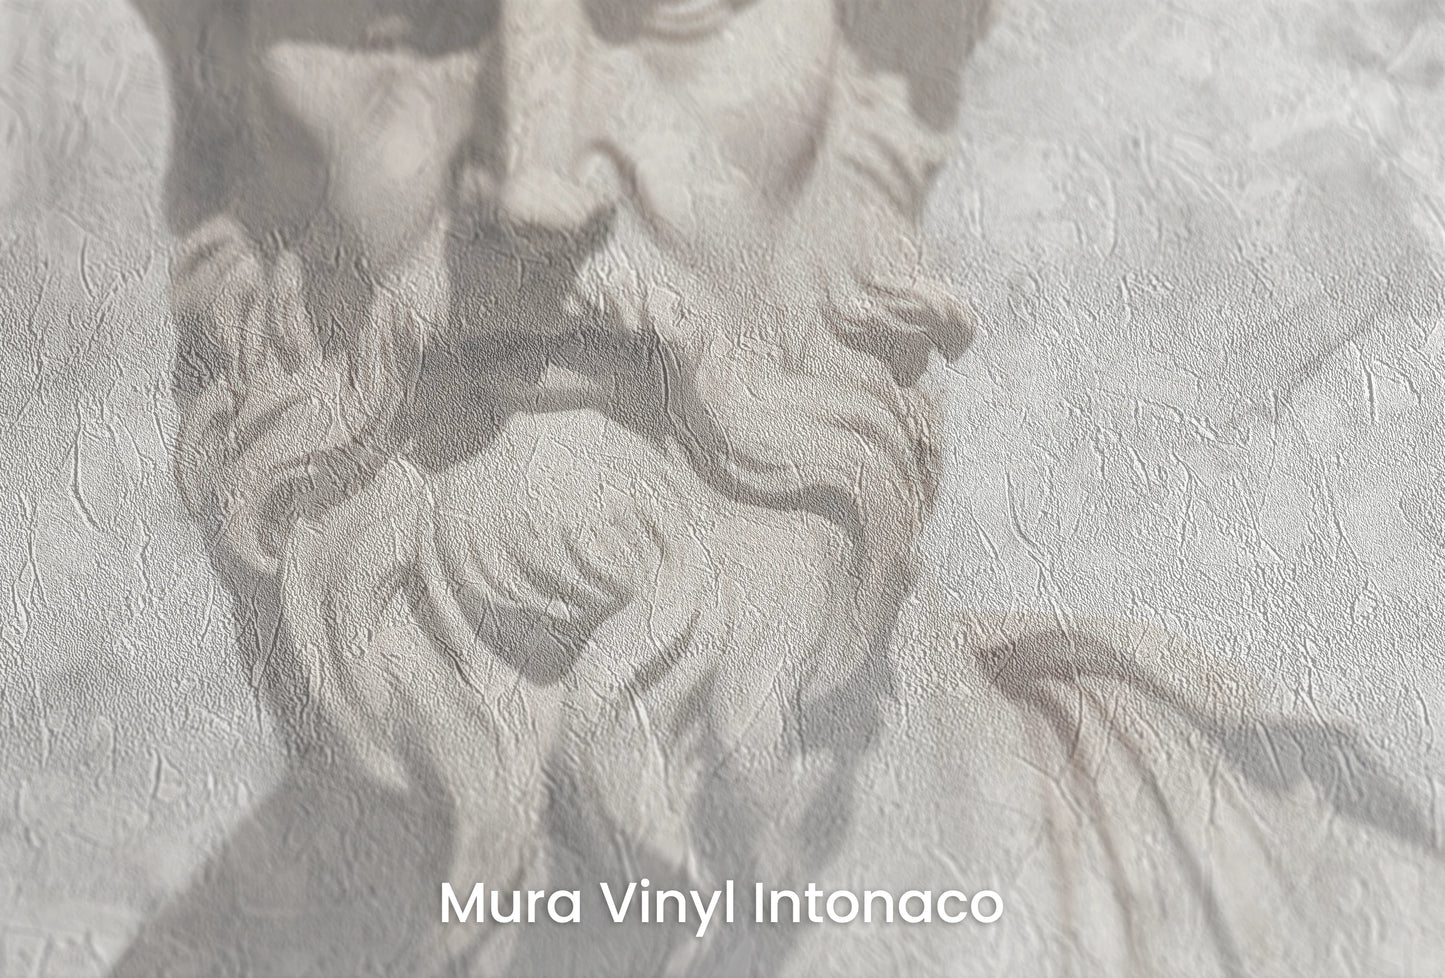 Zbliżenie na artystyczną fototapetę o nazwie Zeus's Deliberation na podłożu Mura Vinyl Intonaco - struktura tartego tynku.